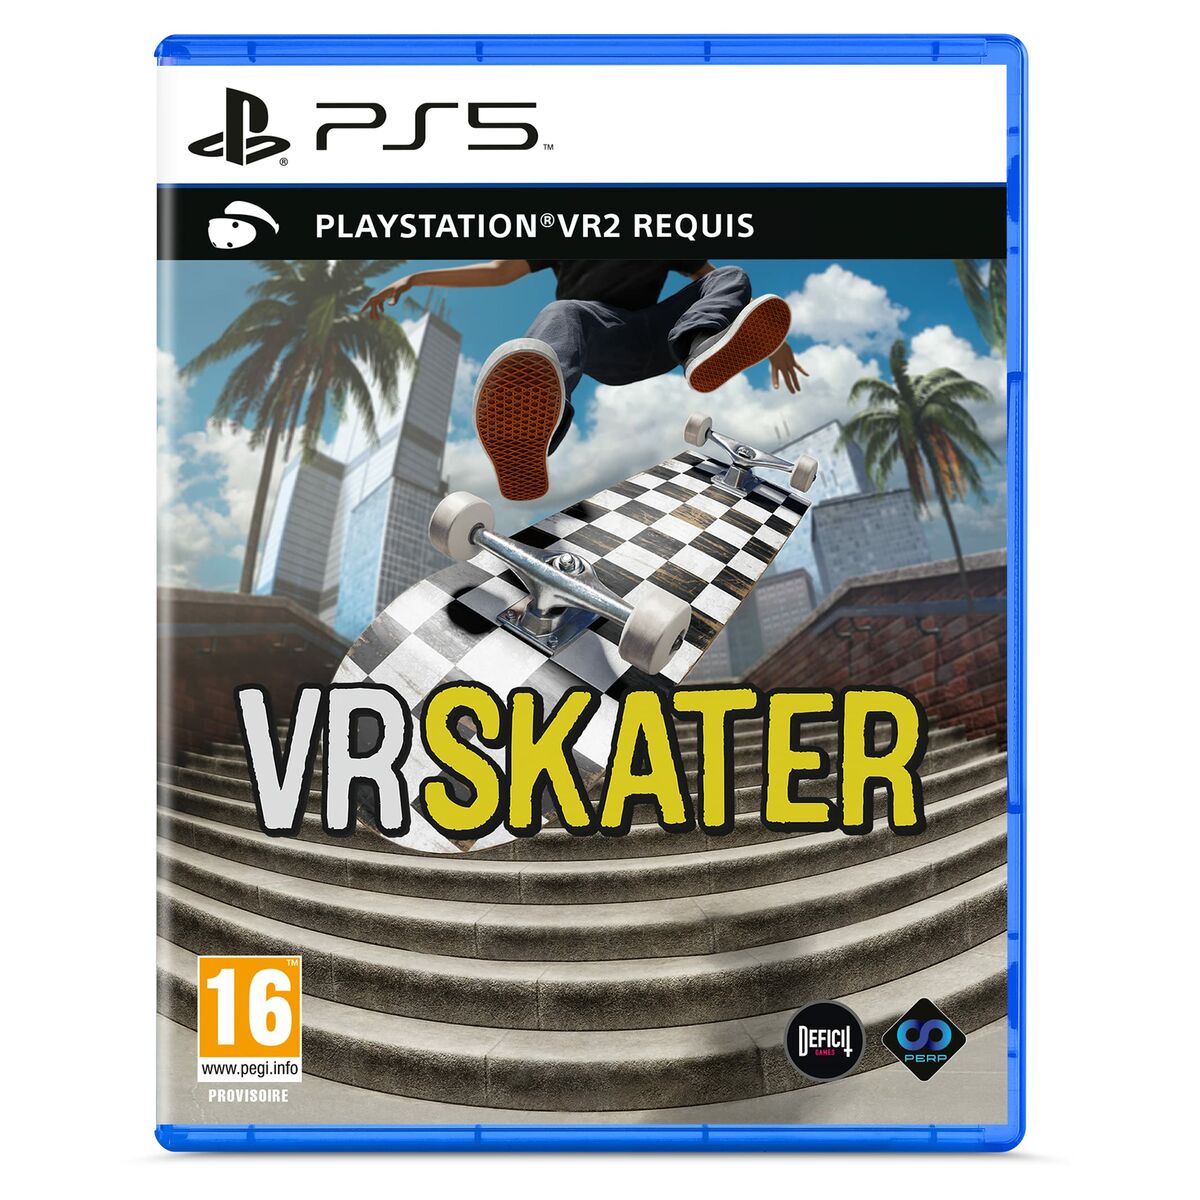 Jeu vidéo PlayStation 5 Just For Games VR SKATER PlayStation VR2